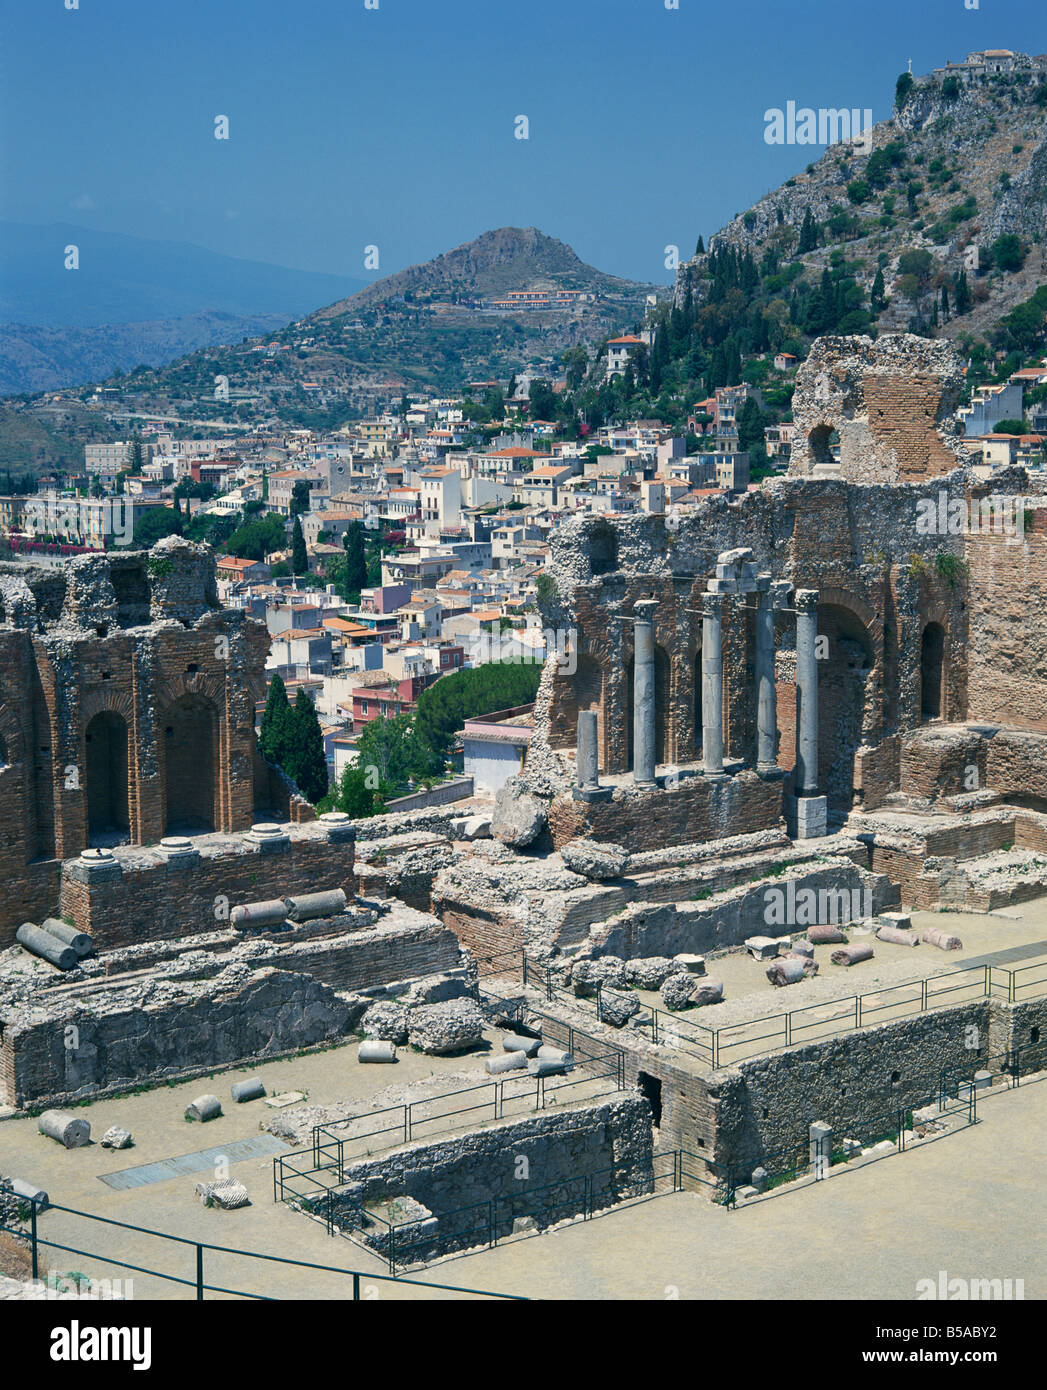 Les ruines du théâtre romain, grec et la ville en arrière plan à Taormina en Sicile Italie G Hellier Banque D'Images